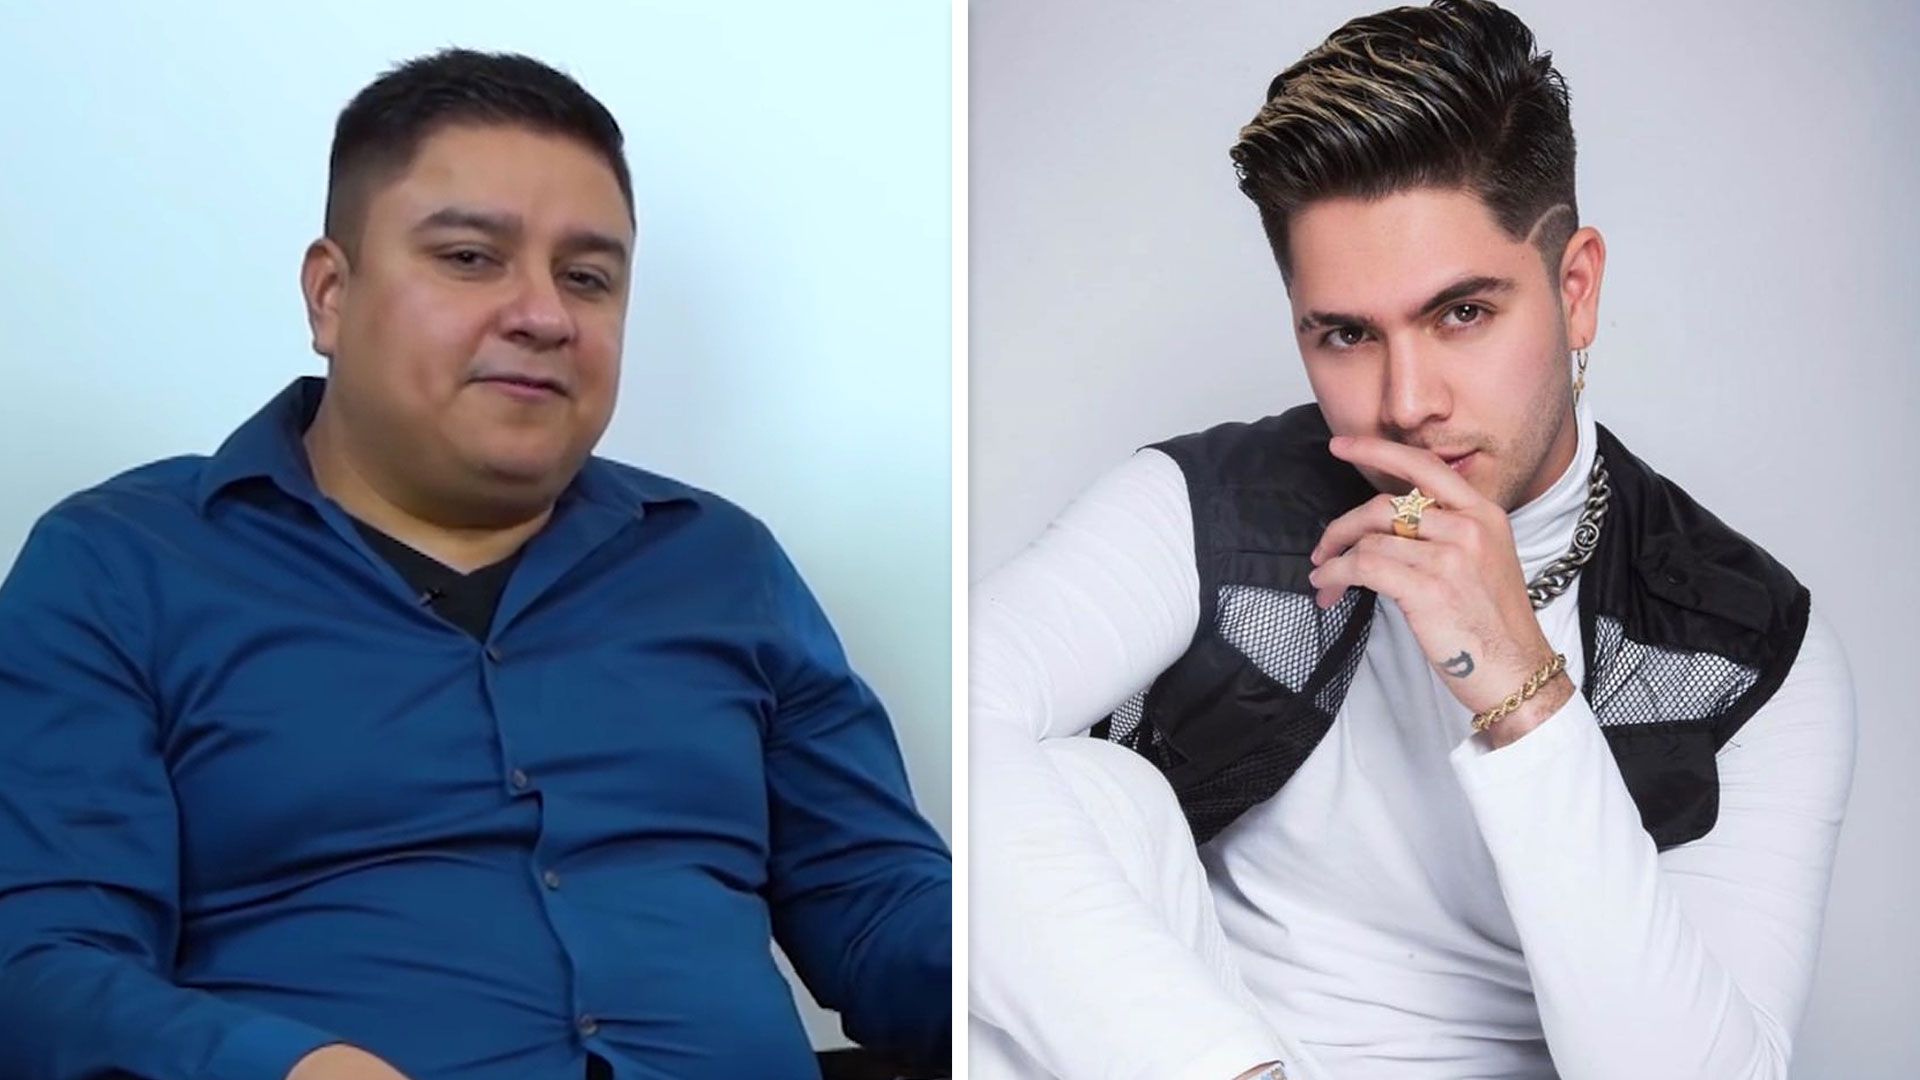 César Morales retó a Juan de Dios Pantoja a que pruebe que él filtró sus videos y que tiene conversaciones suyas (Captura YouTube e Instagram)